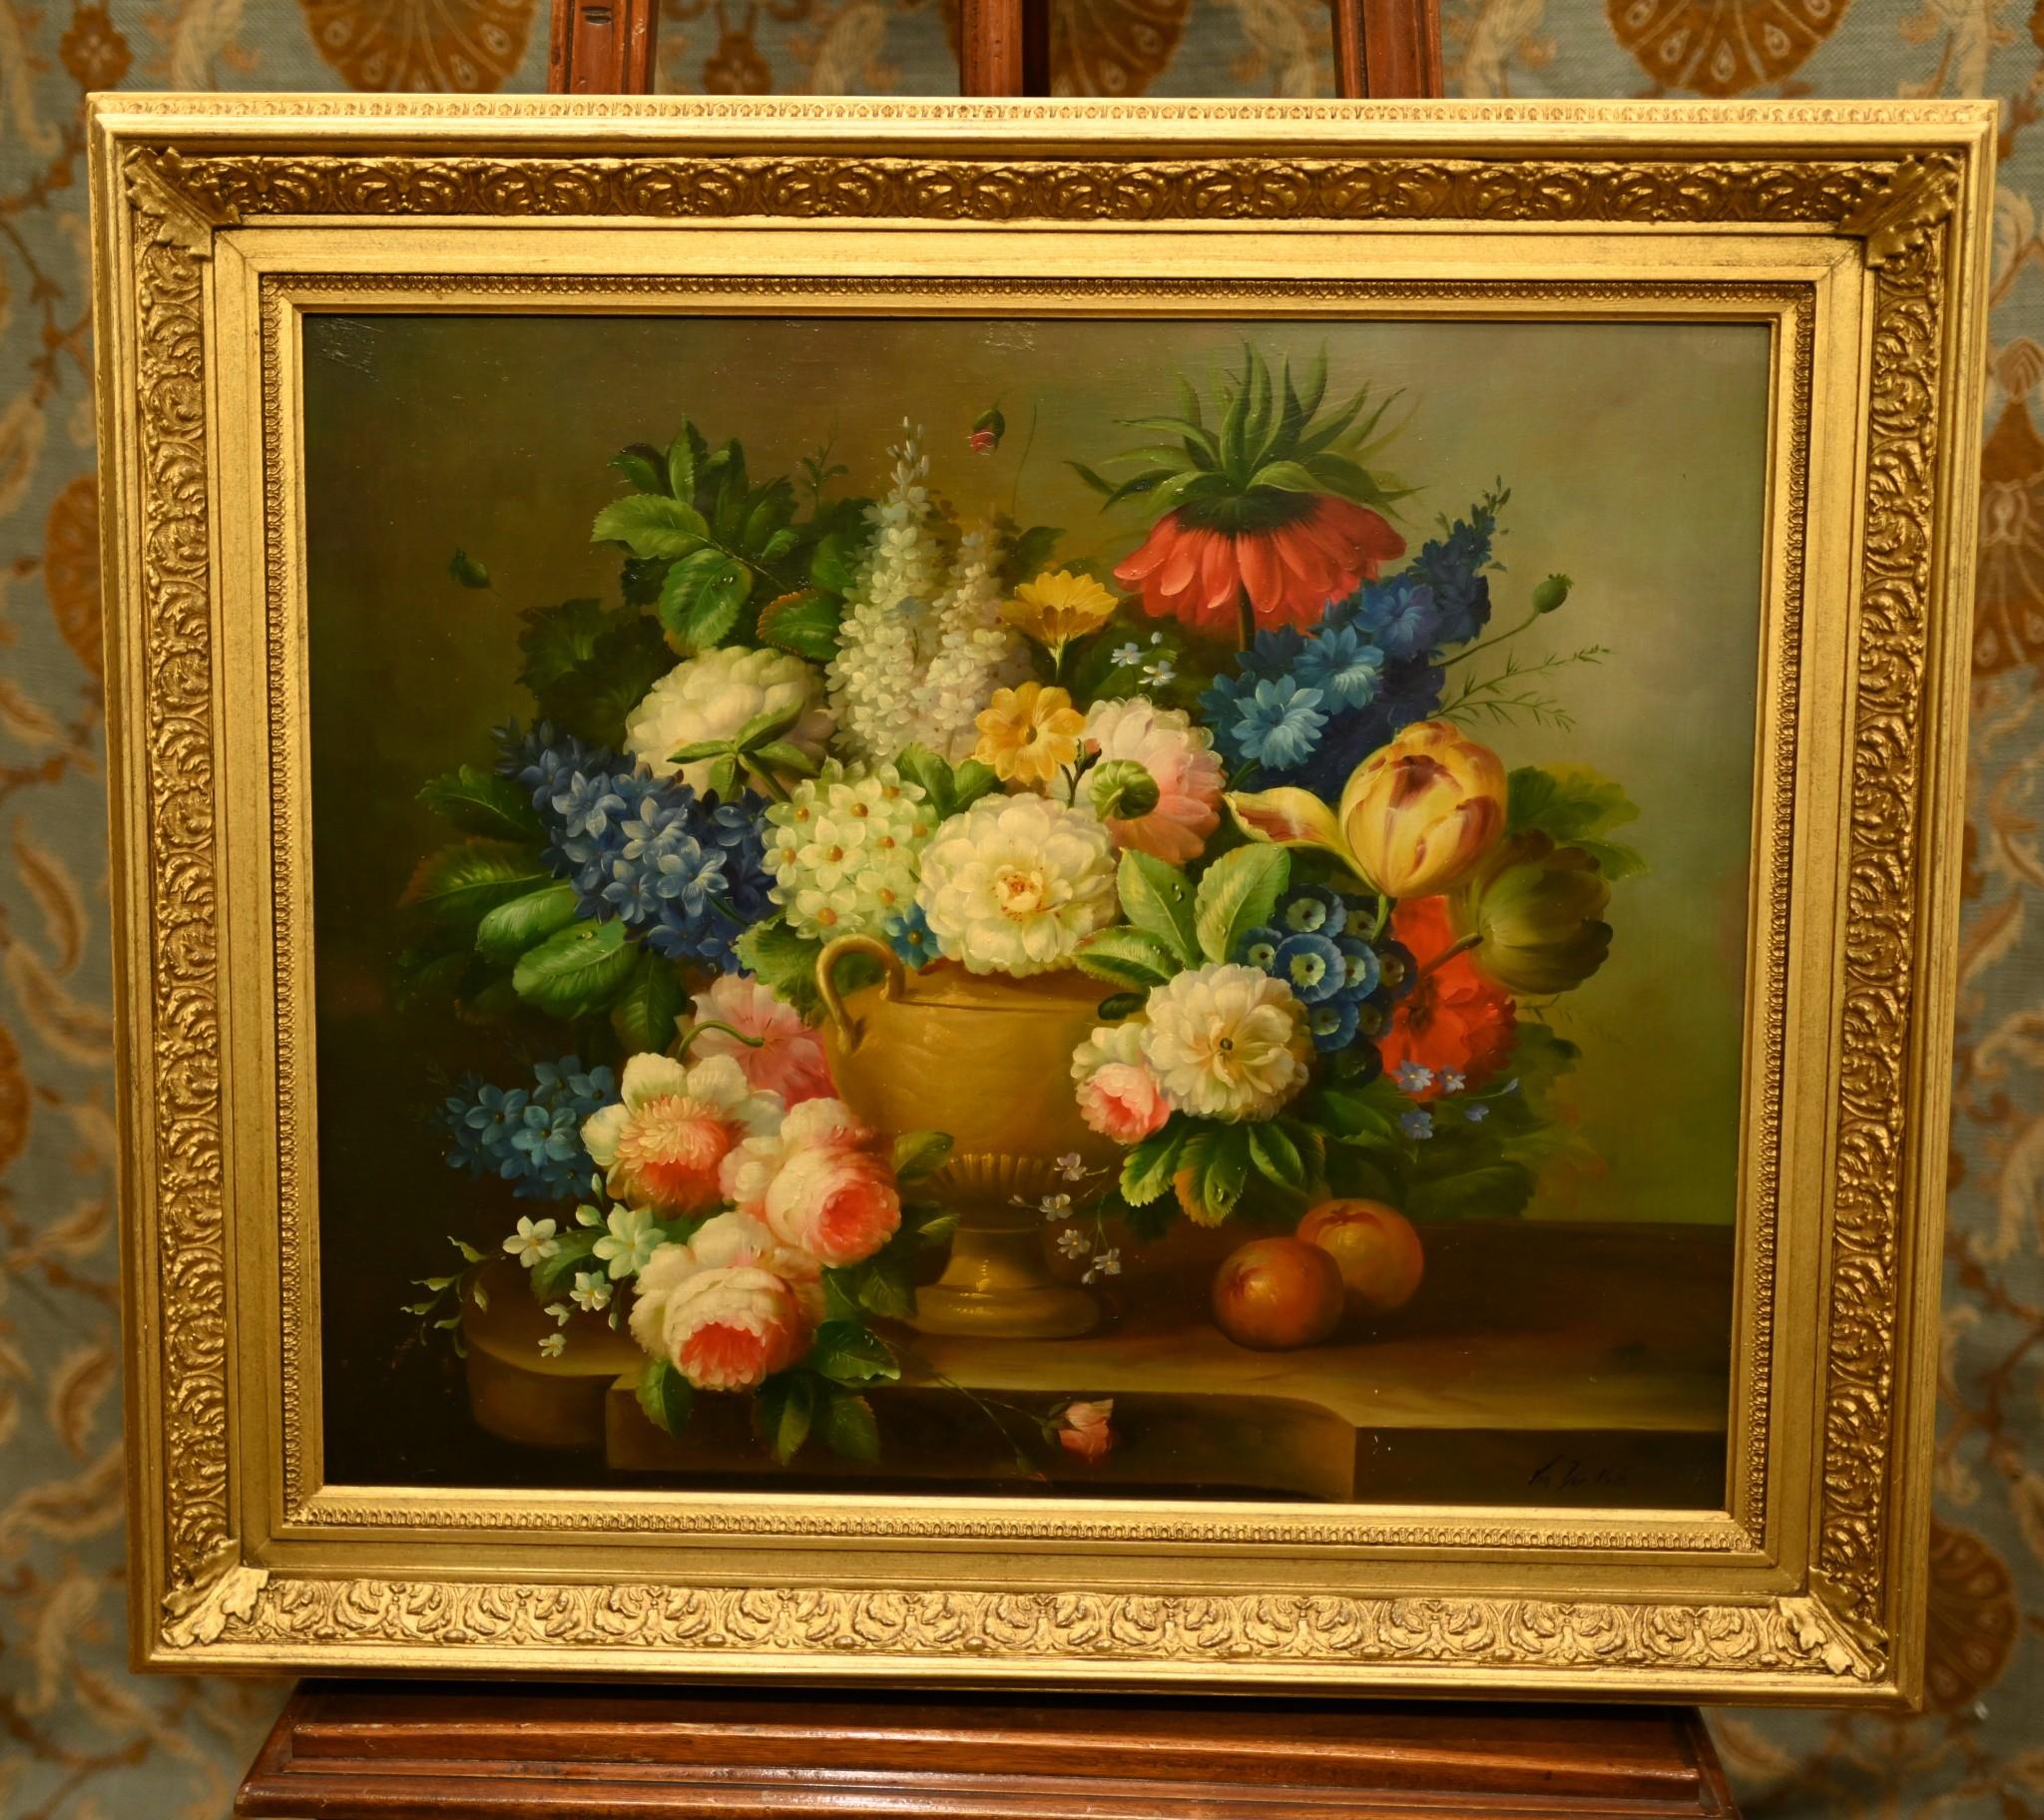 Magnifique et vivante nature morte hollandaise peinte à l'huile
Œuvre très vivante représentant une composition florale colorée
La pièce est signée Van Der Hout dans le coin inférieur droit.
Van Der Hout a vraiment capturé l'énergie et l'éclat des